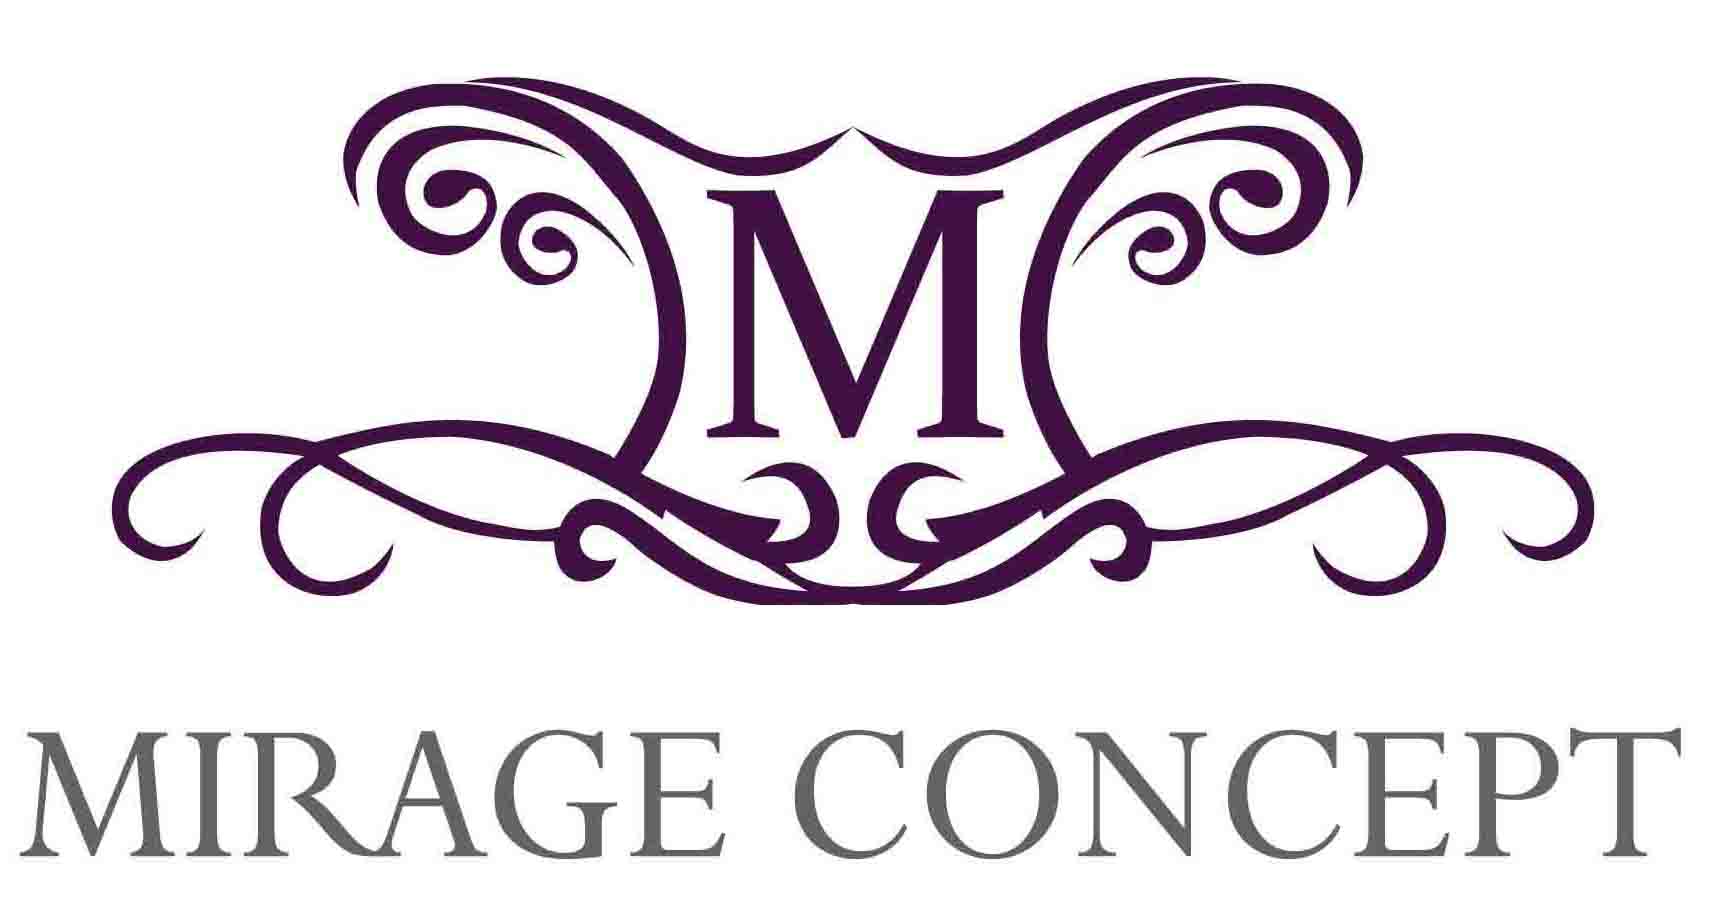 Mirage Concept Event Management